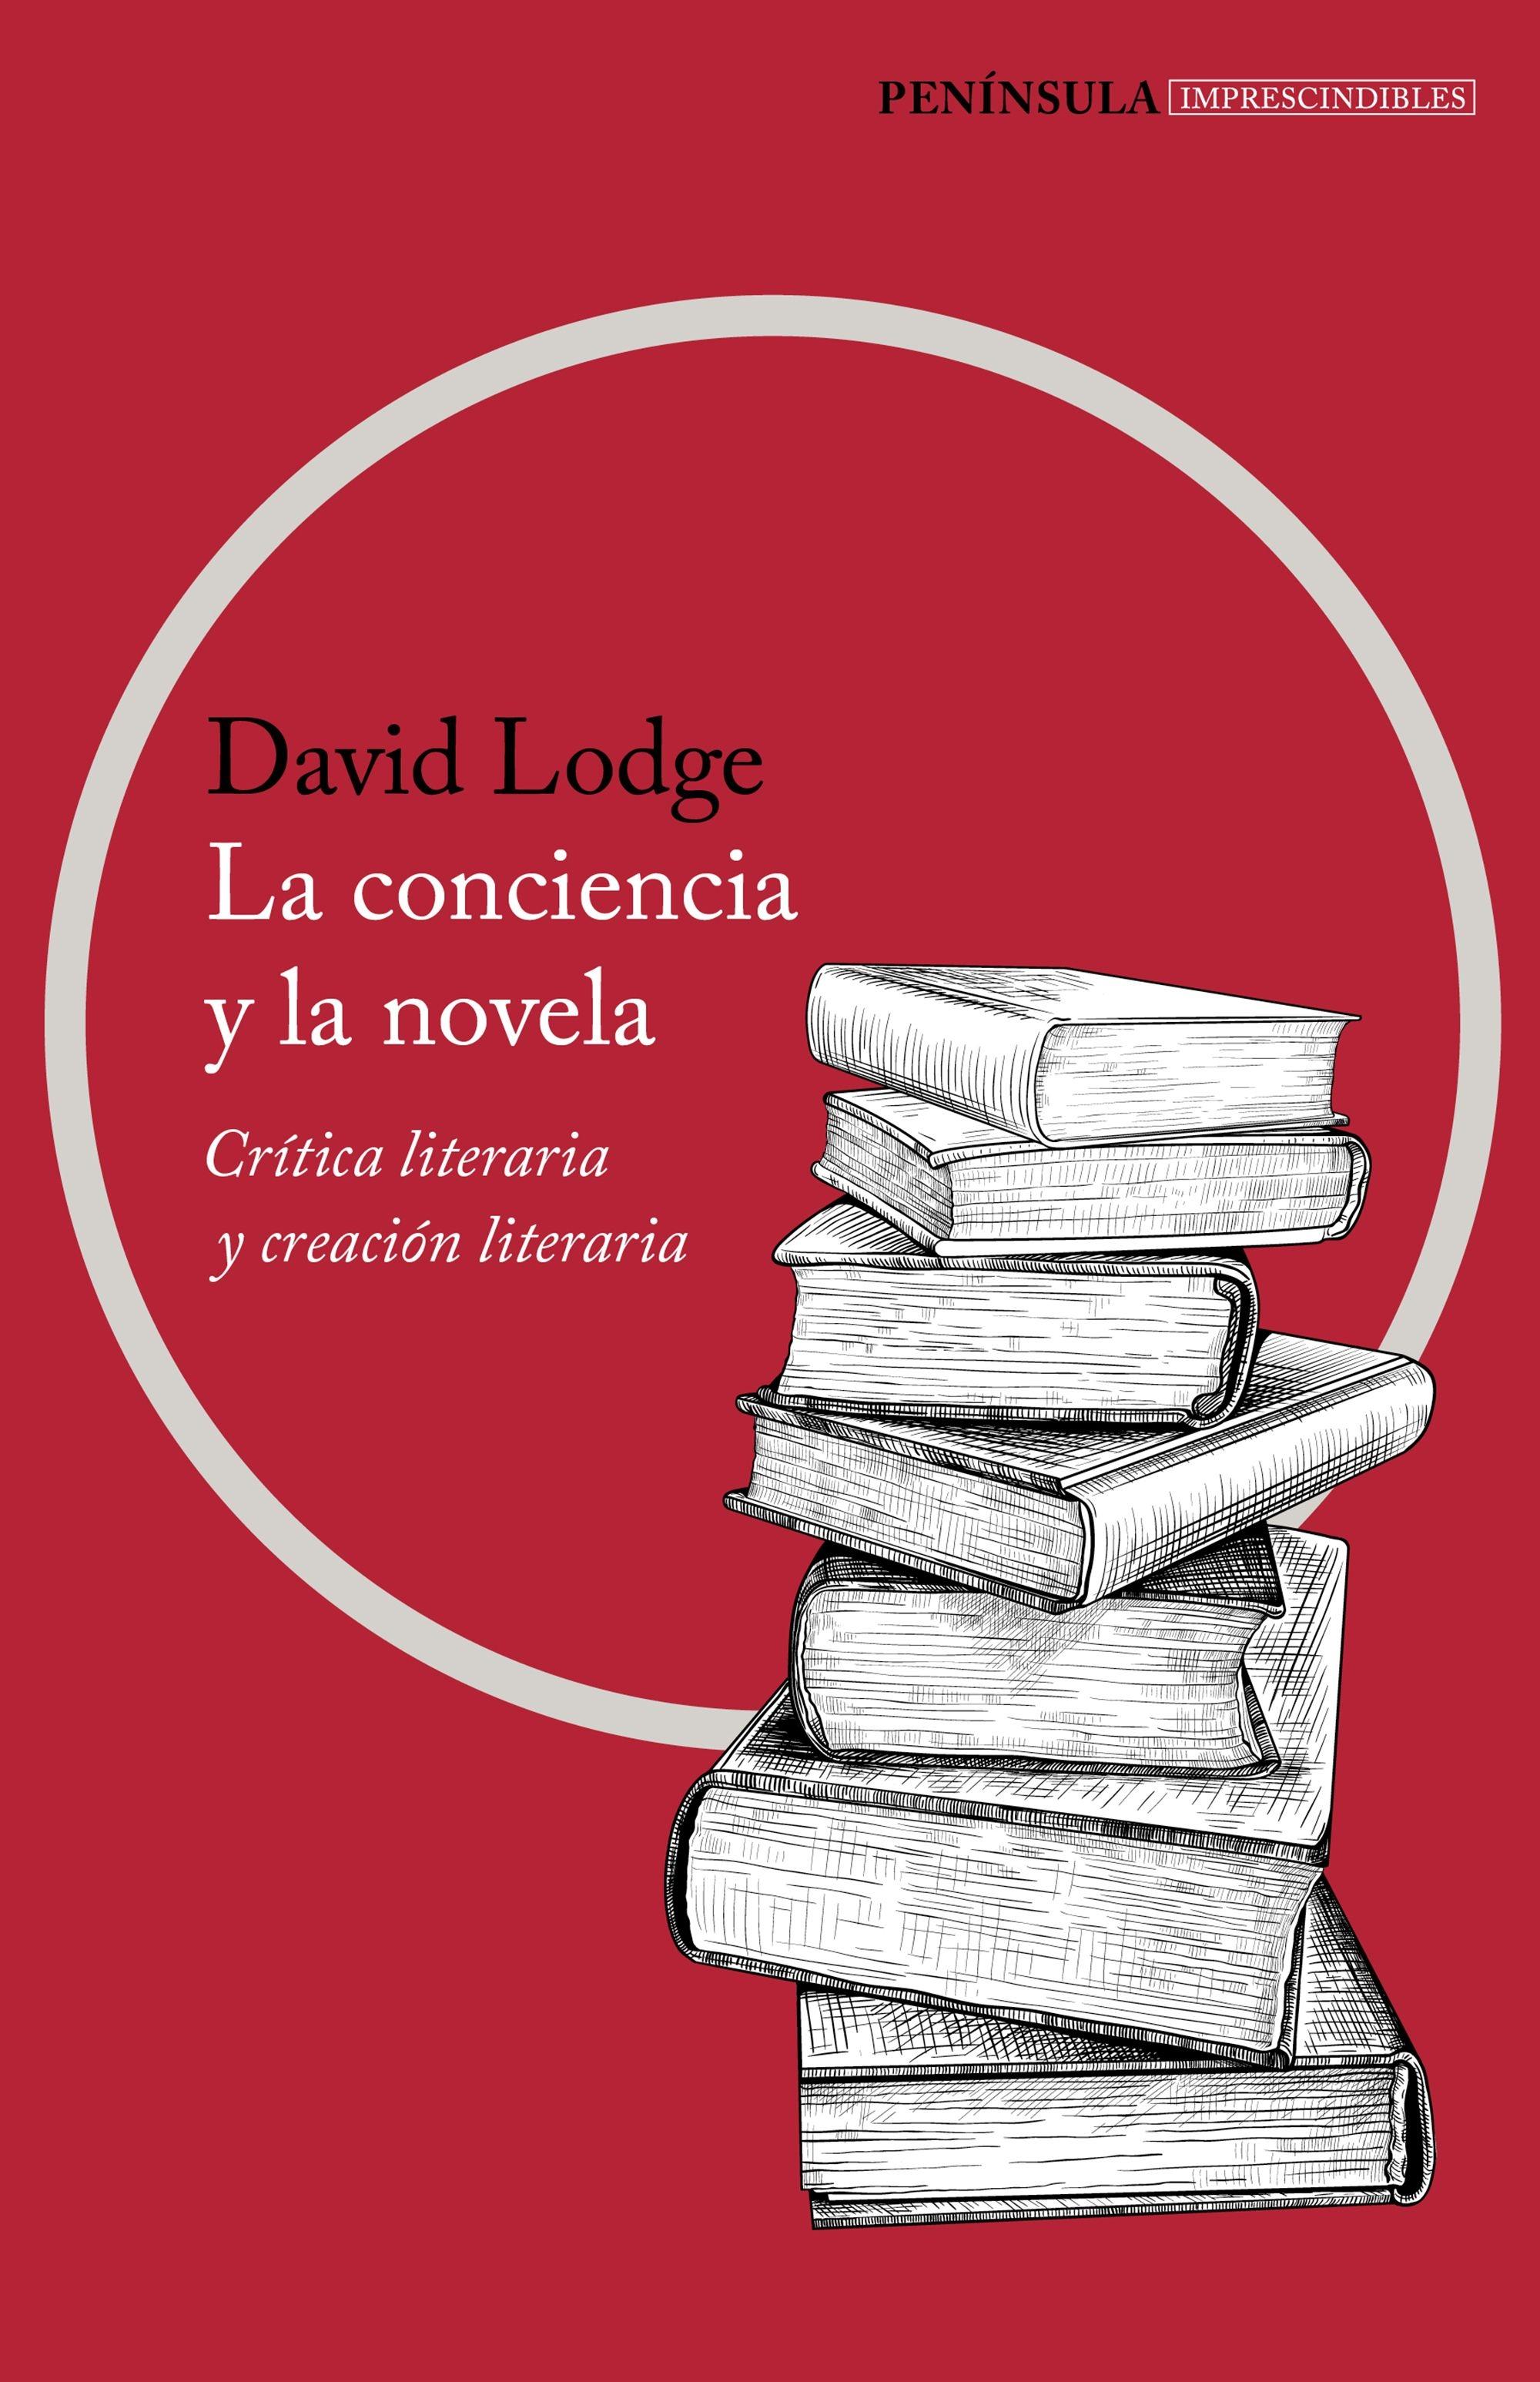 La conciencia y la novela "Crítica y creación literaria". 